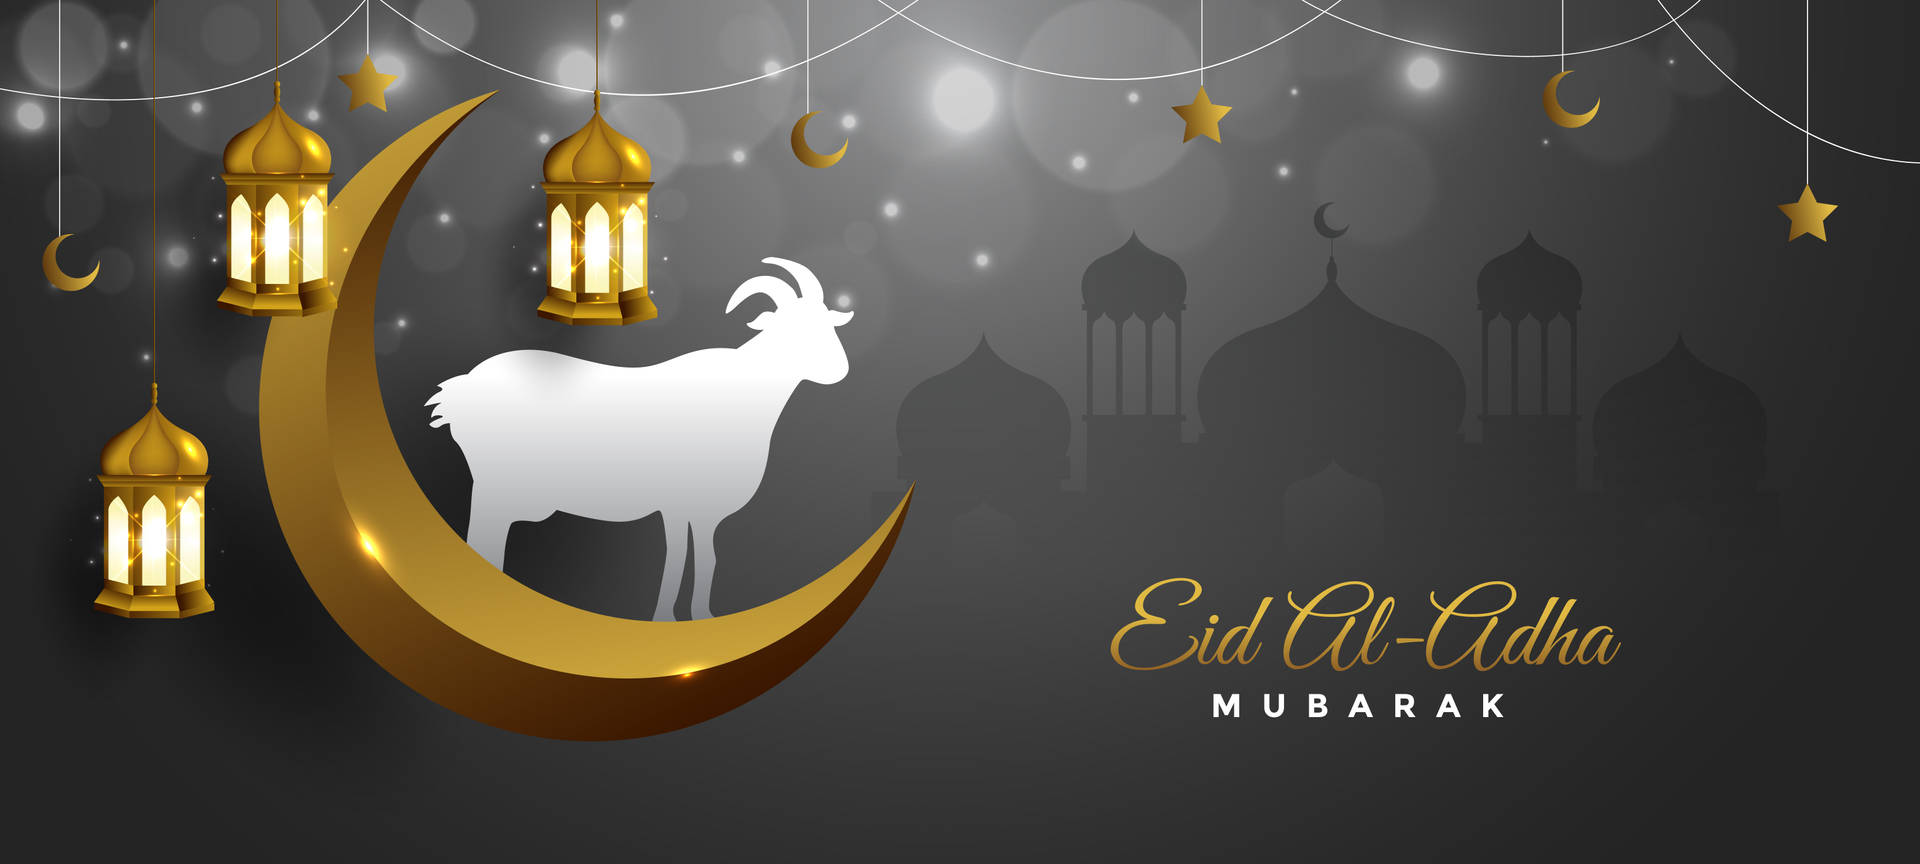 Celebrating Eid Mubarak With Traditional Lanterns Background